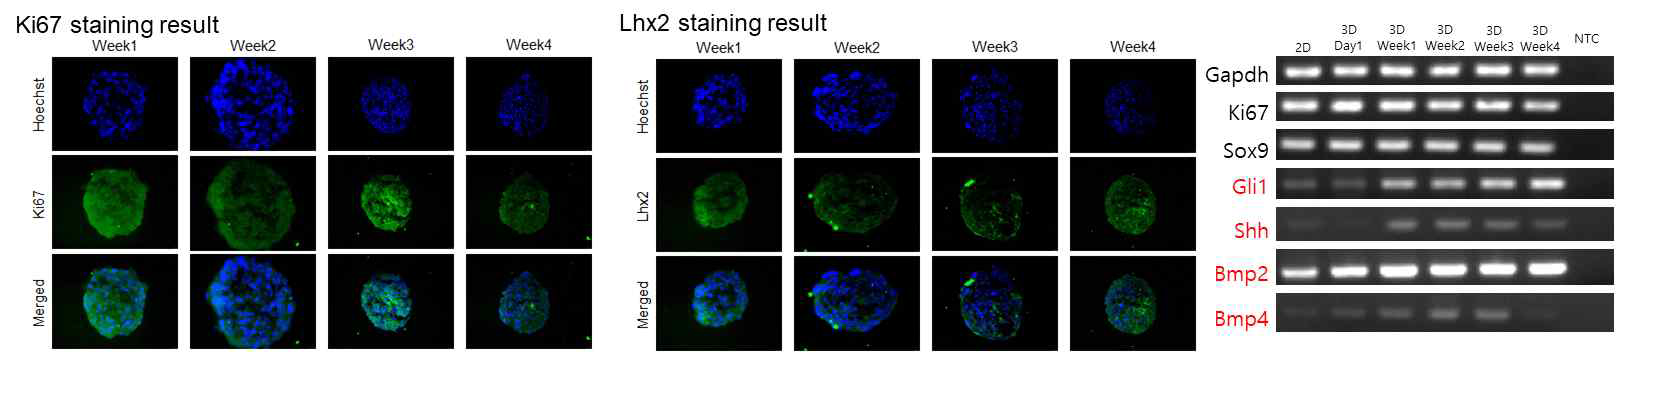 모낭줄기세포 3차원 세포구상체의 염색결과 및 성장기 단계 마커 발현